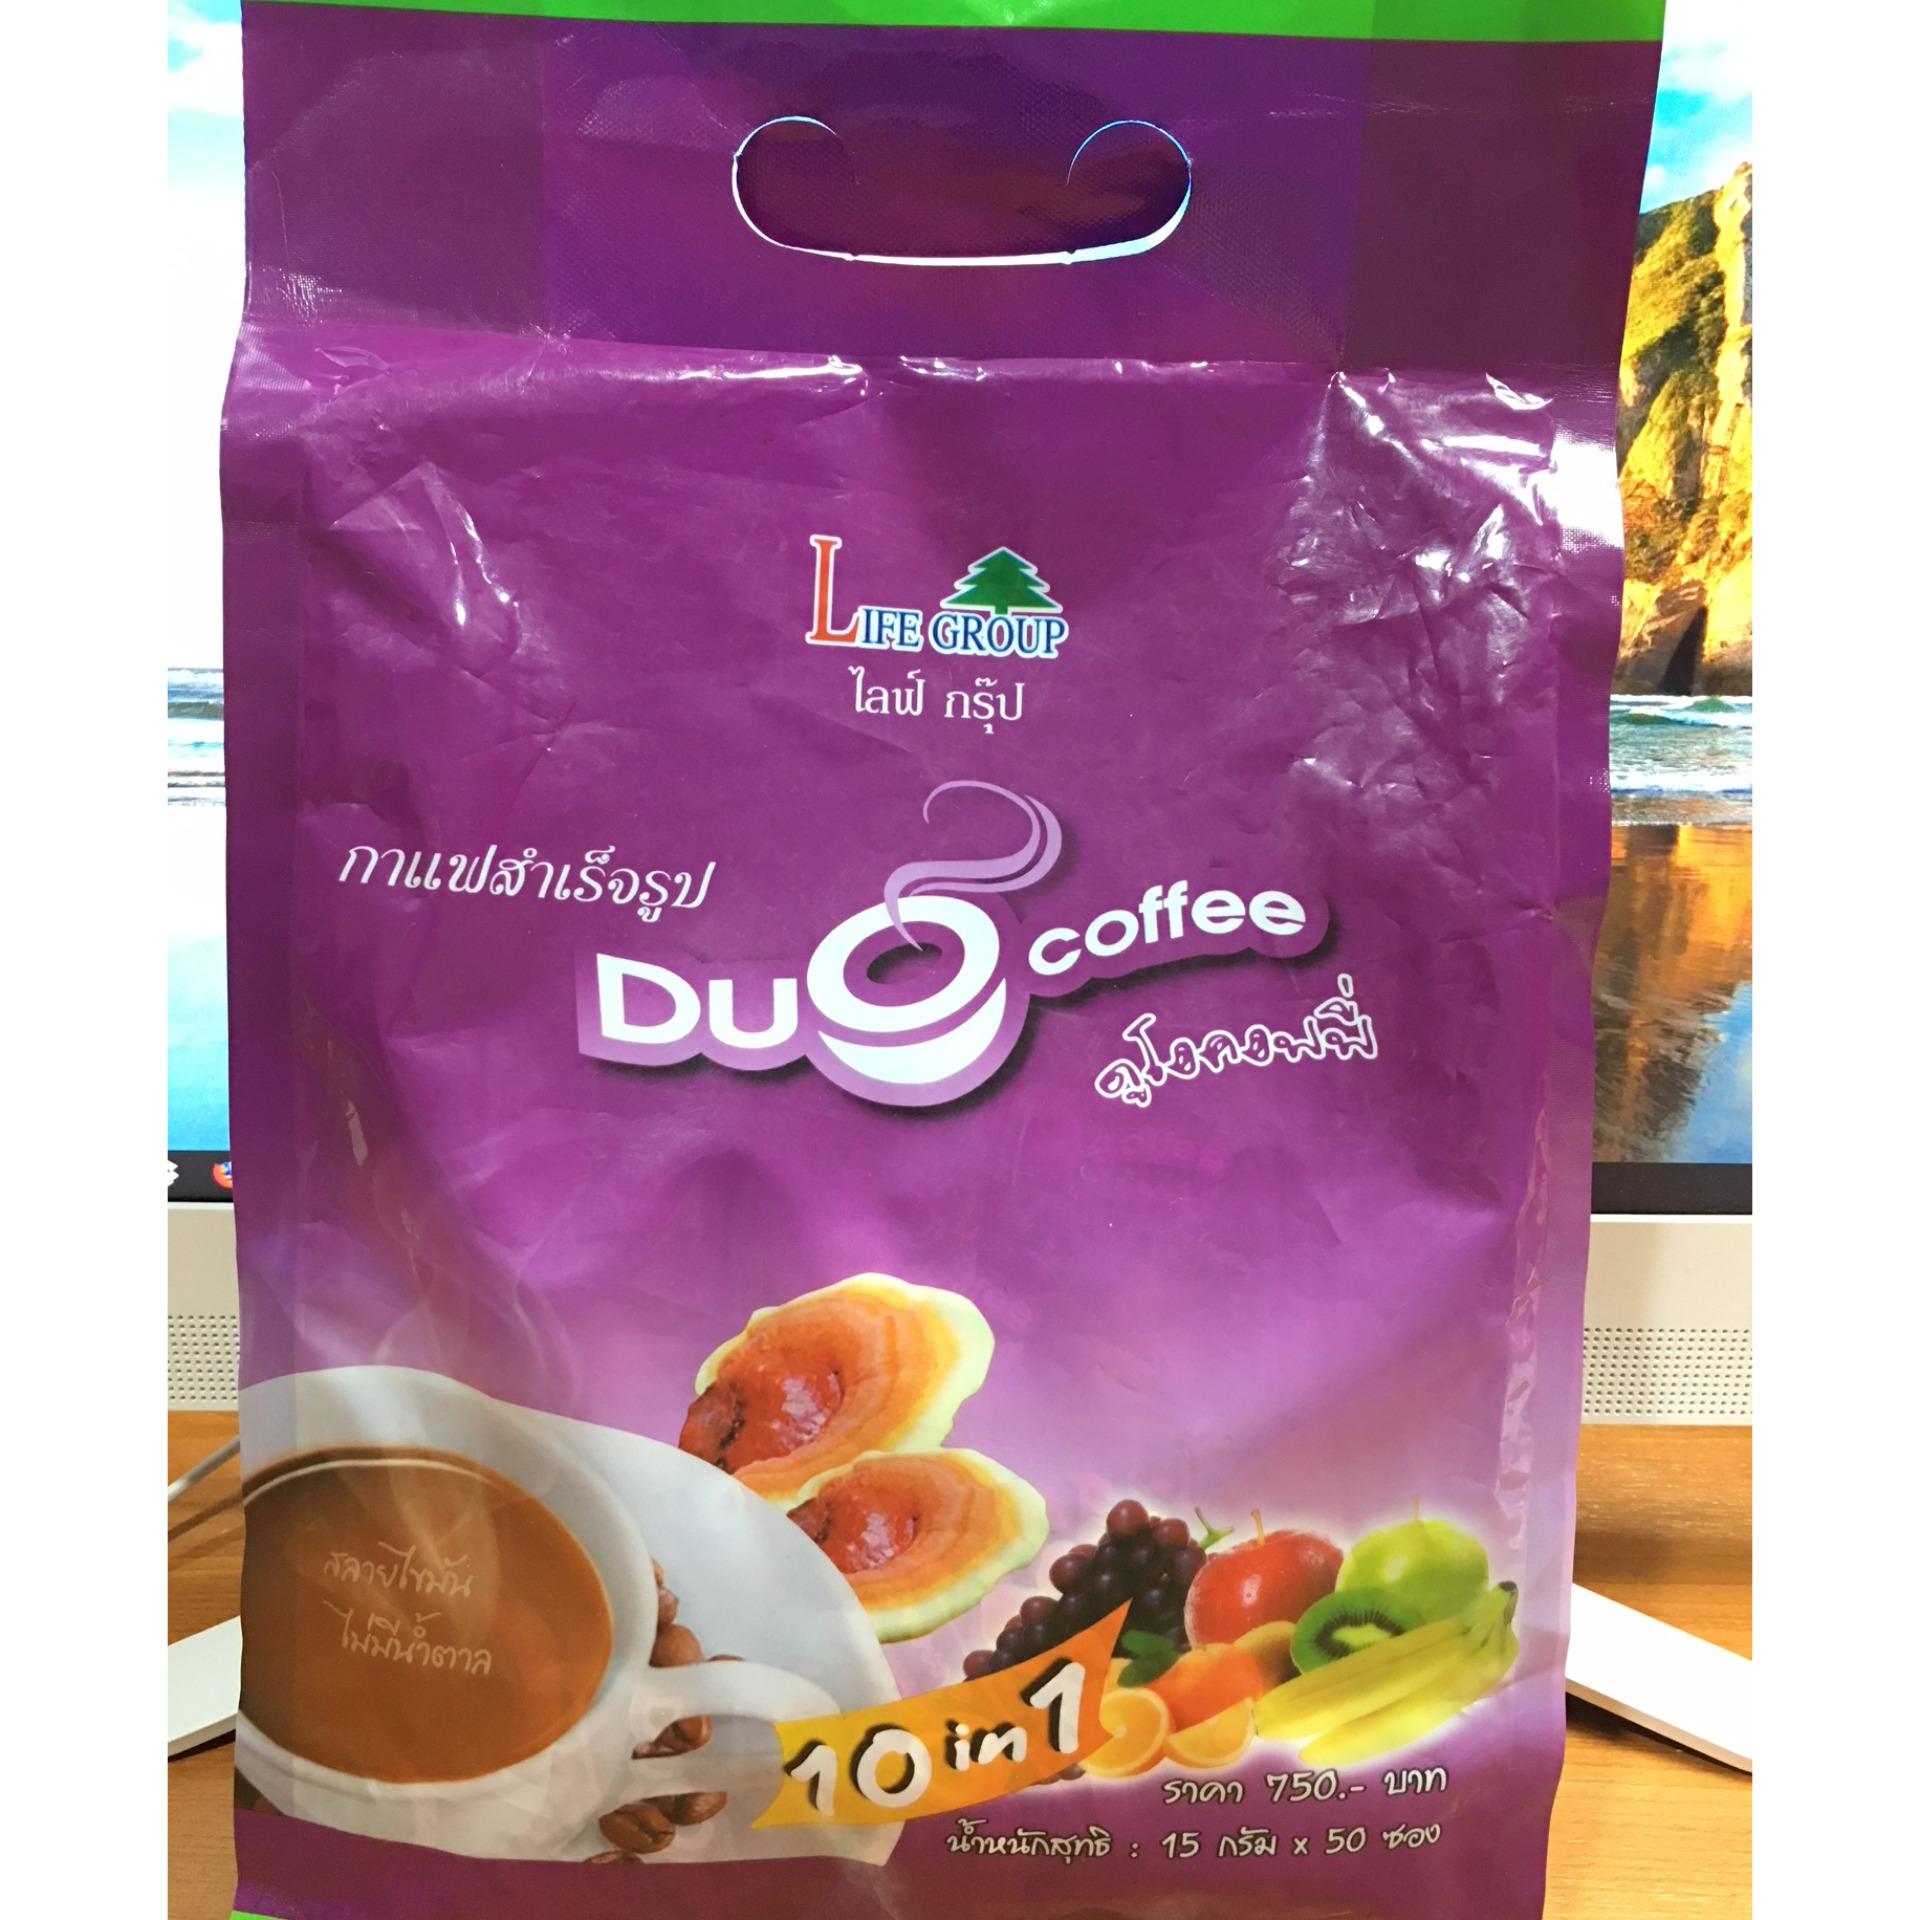 กาแฟดูโอ้ คอฟฟี่  กาแฟควบคุมน้ำหนัก สูตรไม่มีน้ำตาล ช่วยเผาผลาญไขมัน (แพ็ค 50ซอง)  กาแฟดูโอ ไลฟ์กรุ๊ป  Duo Coffee  LIFE GROUP